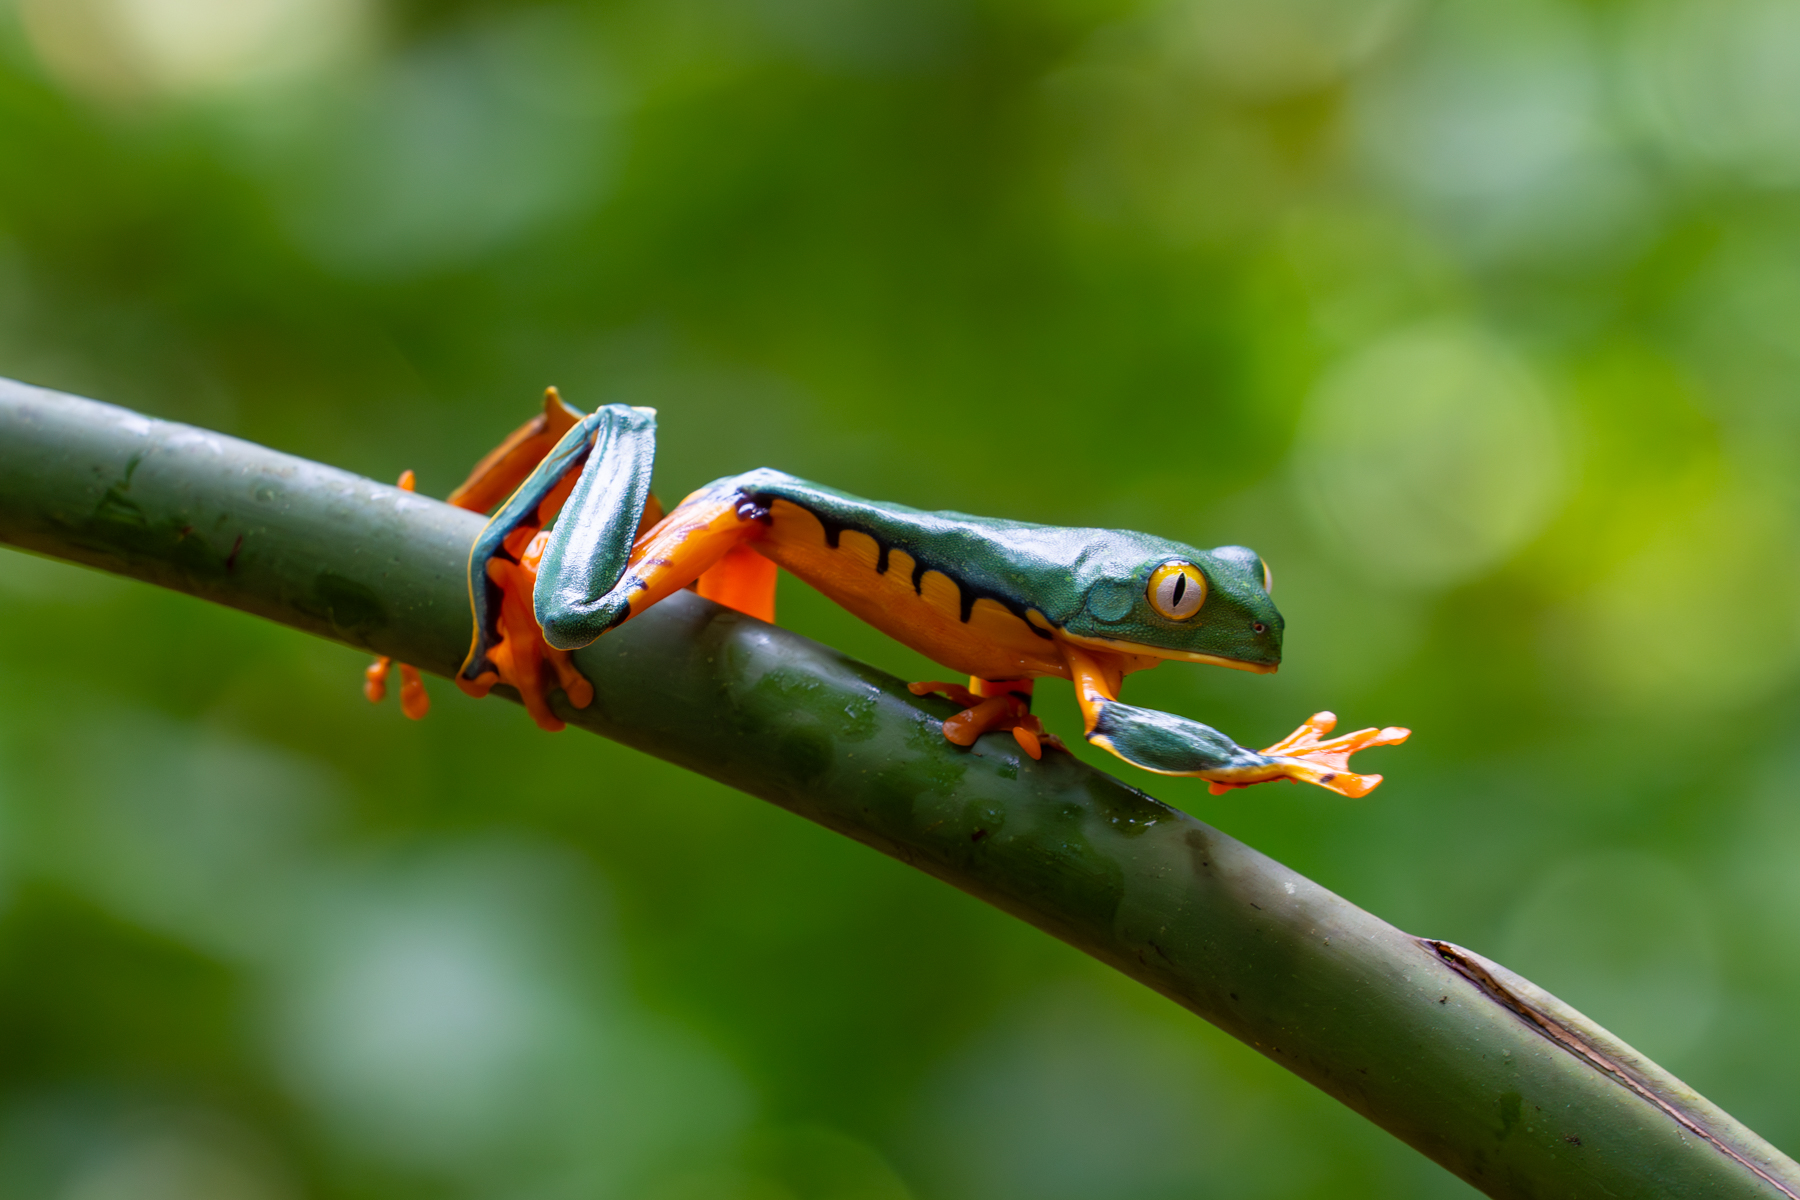 A Splendid Tree Frog walks the leaves (image by Inger Vandyke)